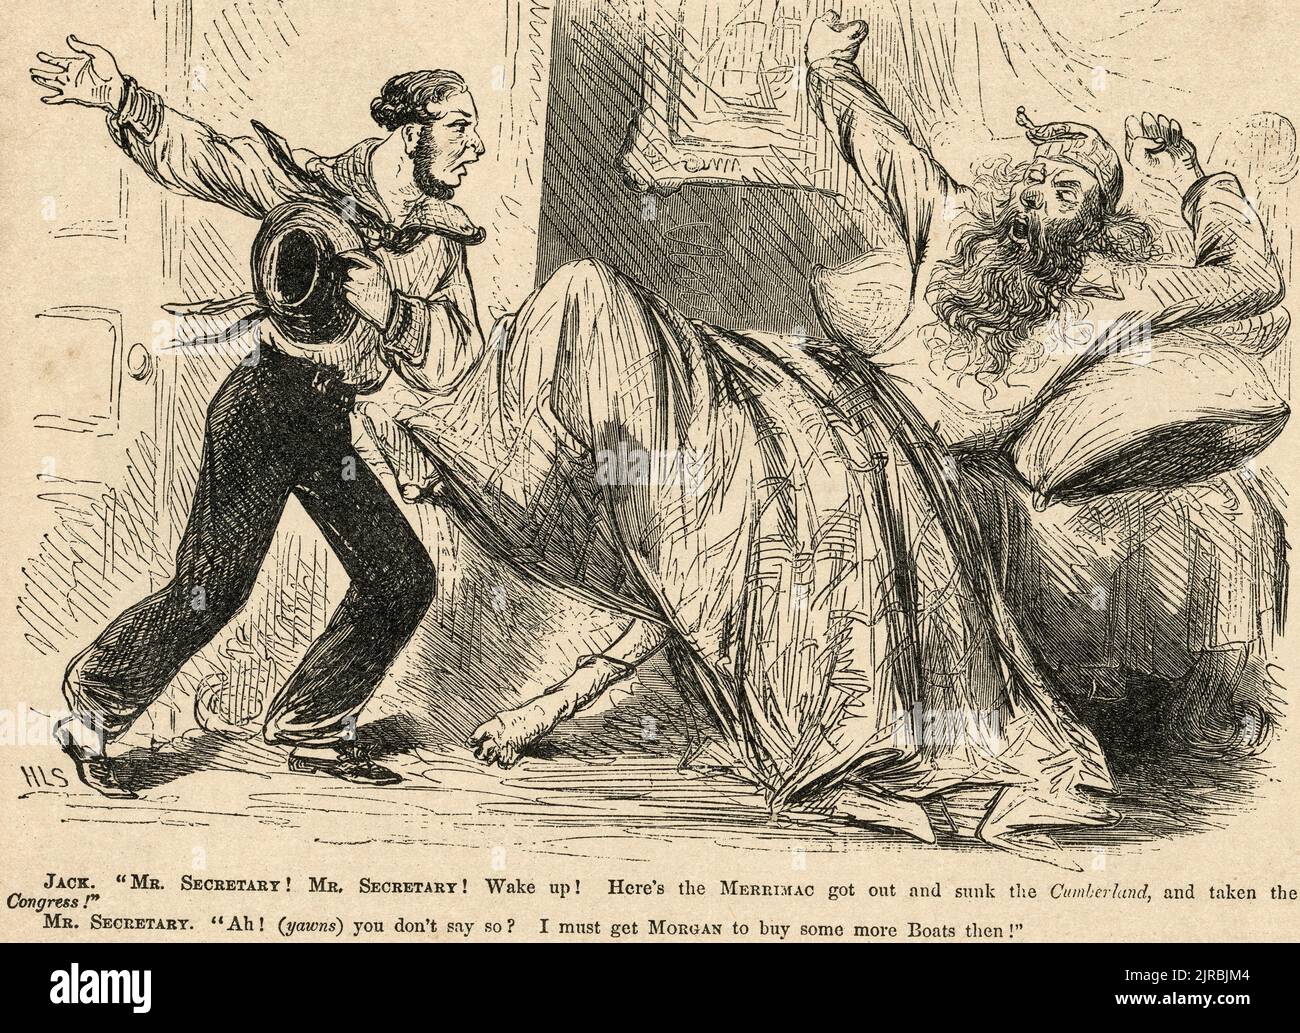 Politischer Cartoon aus dem Jahr 1862 - als der Kriegsminister Edwin M. Stanton informiert wird, dass der Konföderierte Eisengekleidete Merimac die Cumberland versenkt und den Kongress erobert hat, antwortet er mit der Aussage, dass er Morgan dazu bringen muss, dann mehr Boote zu kaufen Stockfoto